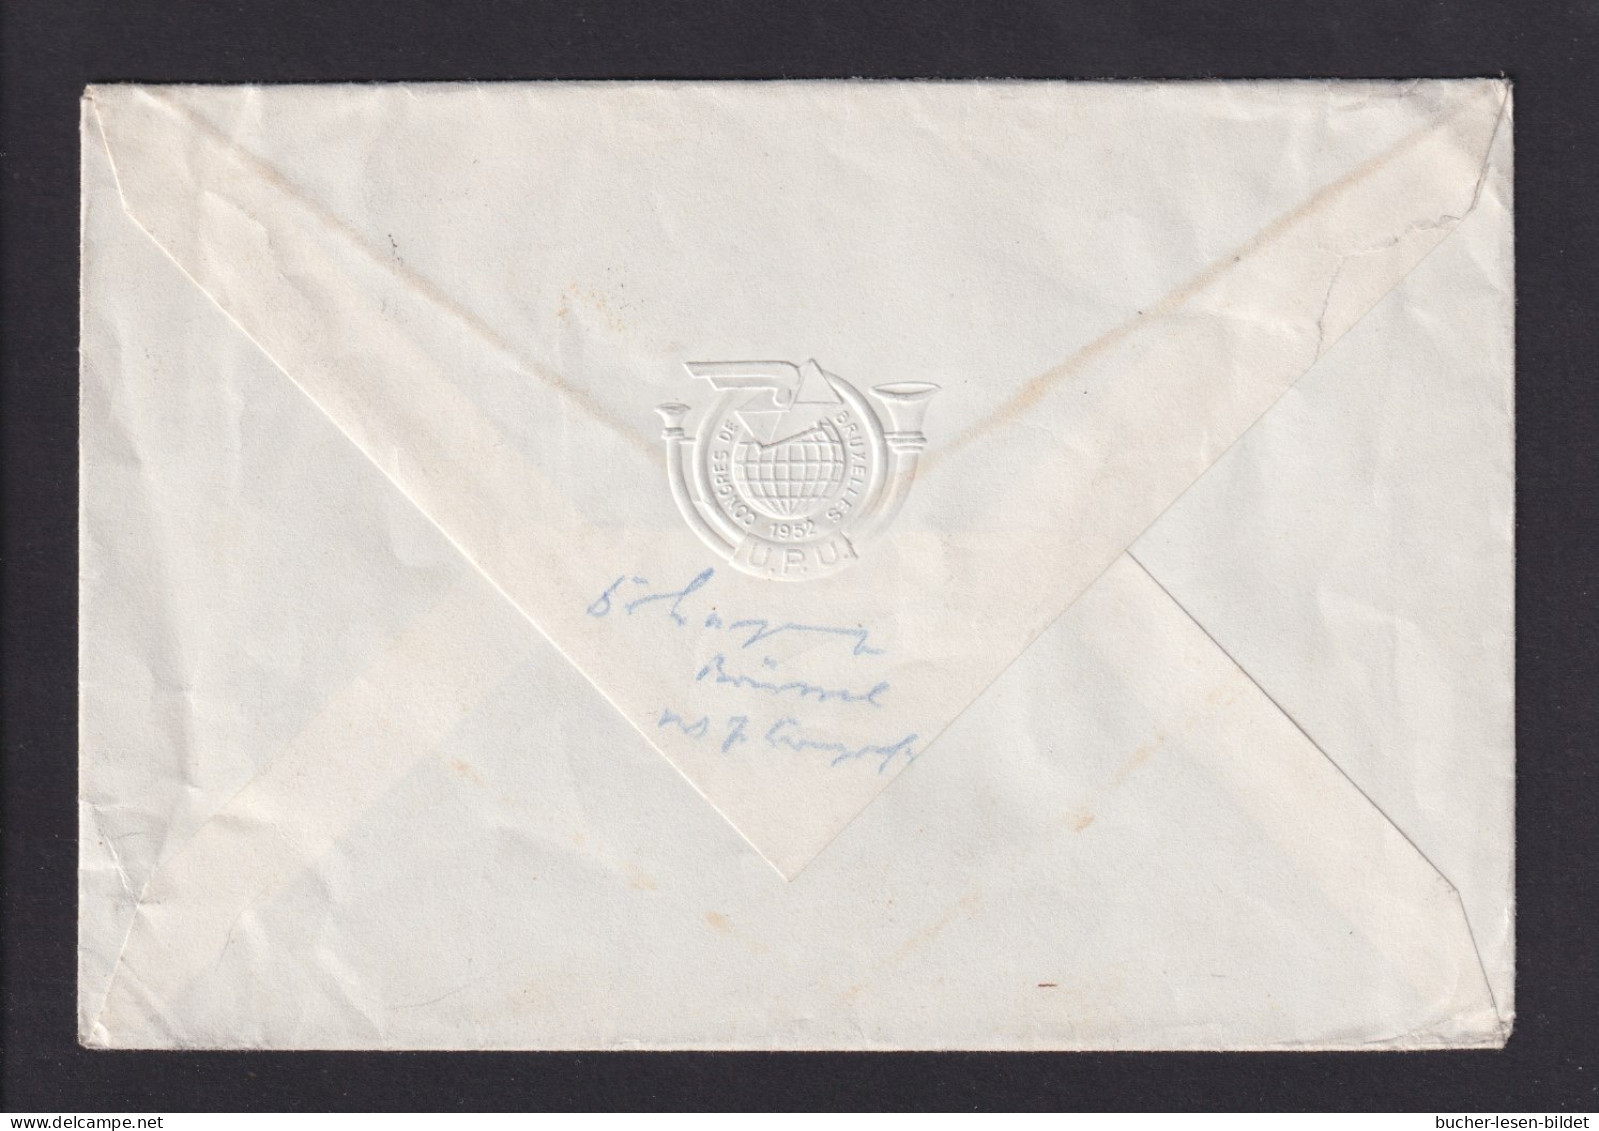 1952 - UPU-Kongress Brüssel - Delegiertenbrief Mit Sonderstempel Und Passender Frankatur - UPU (Unión Postal Universal)